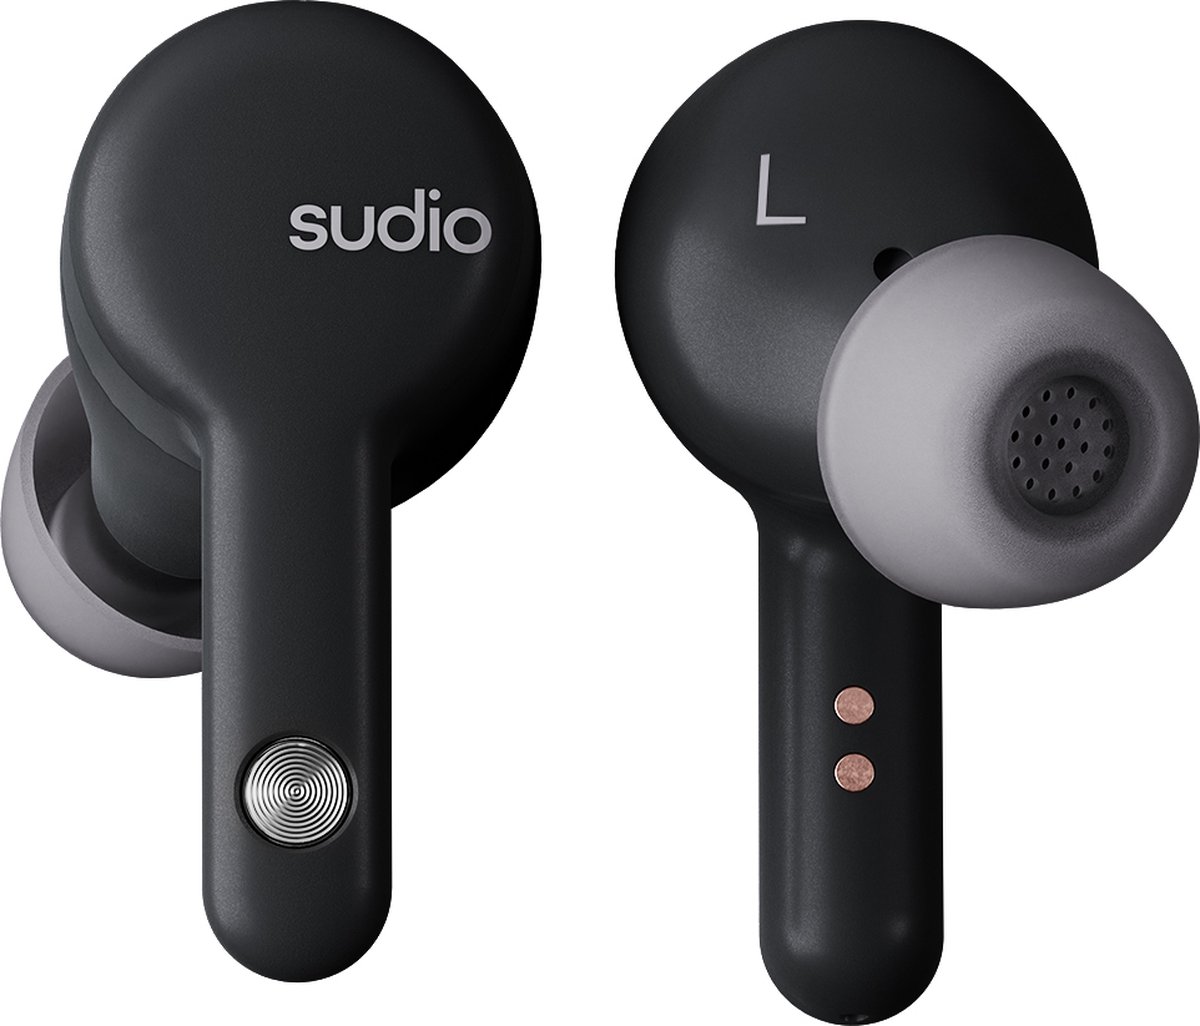 Sudio A2 in-ear true wireless earphones - draadloze oordopjes - met active noice cancellation (ANC) - zwart